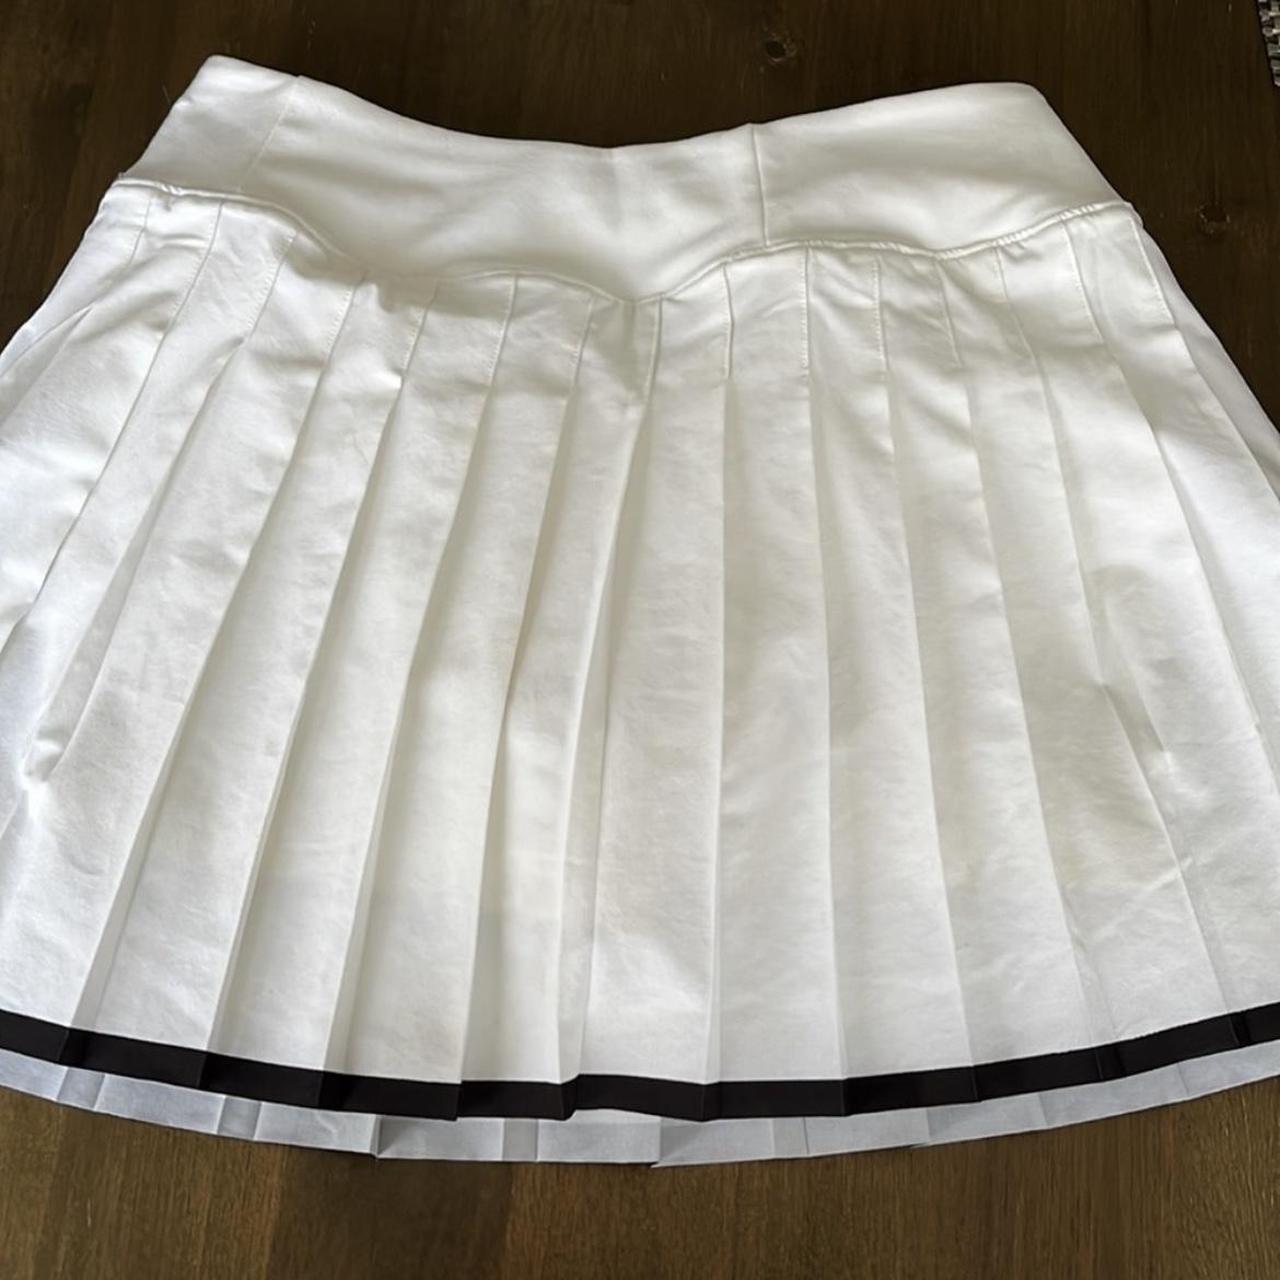 Nike Women's White and Black Skirt | Depop